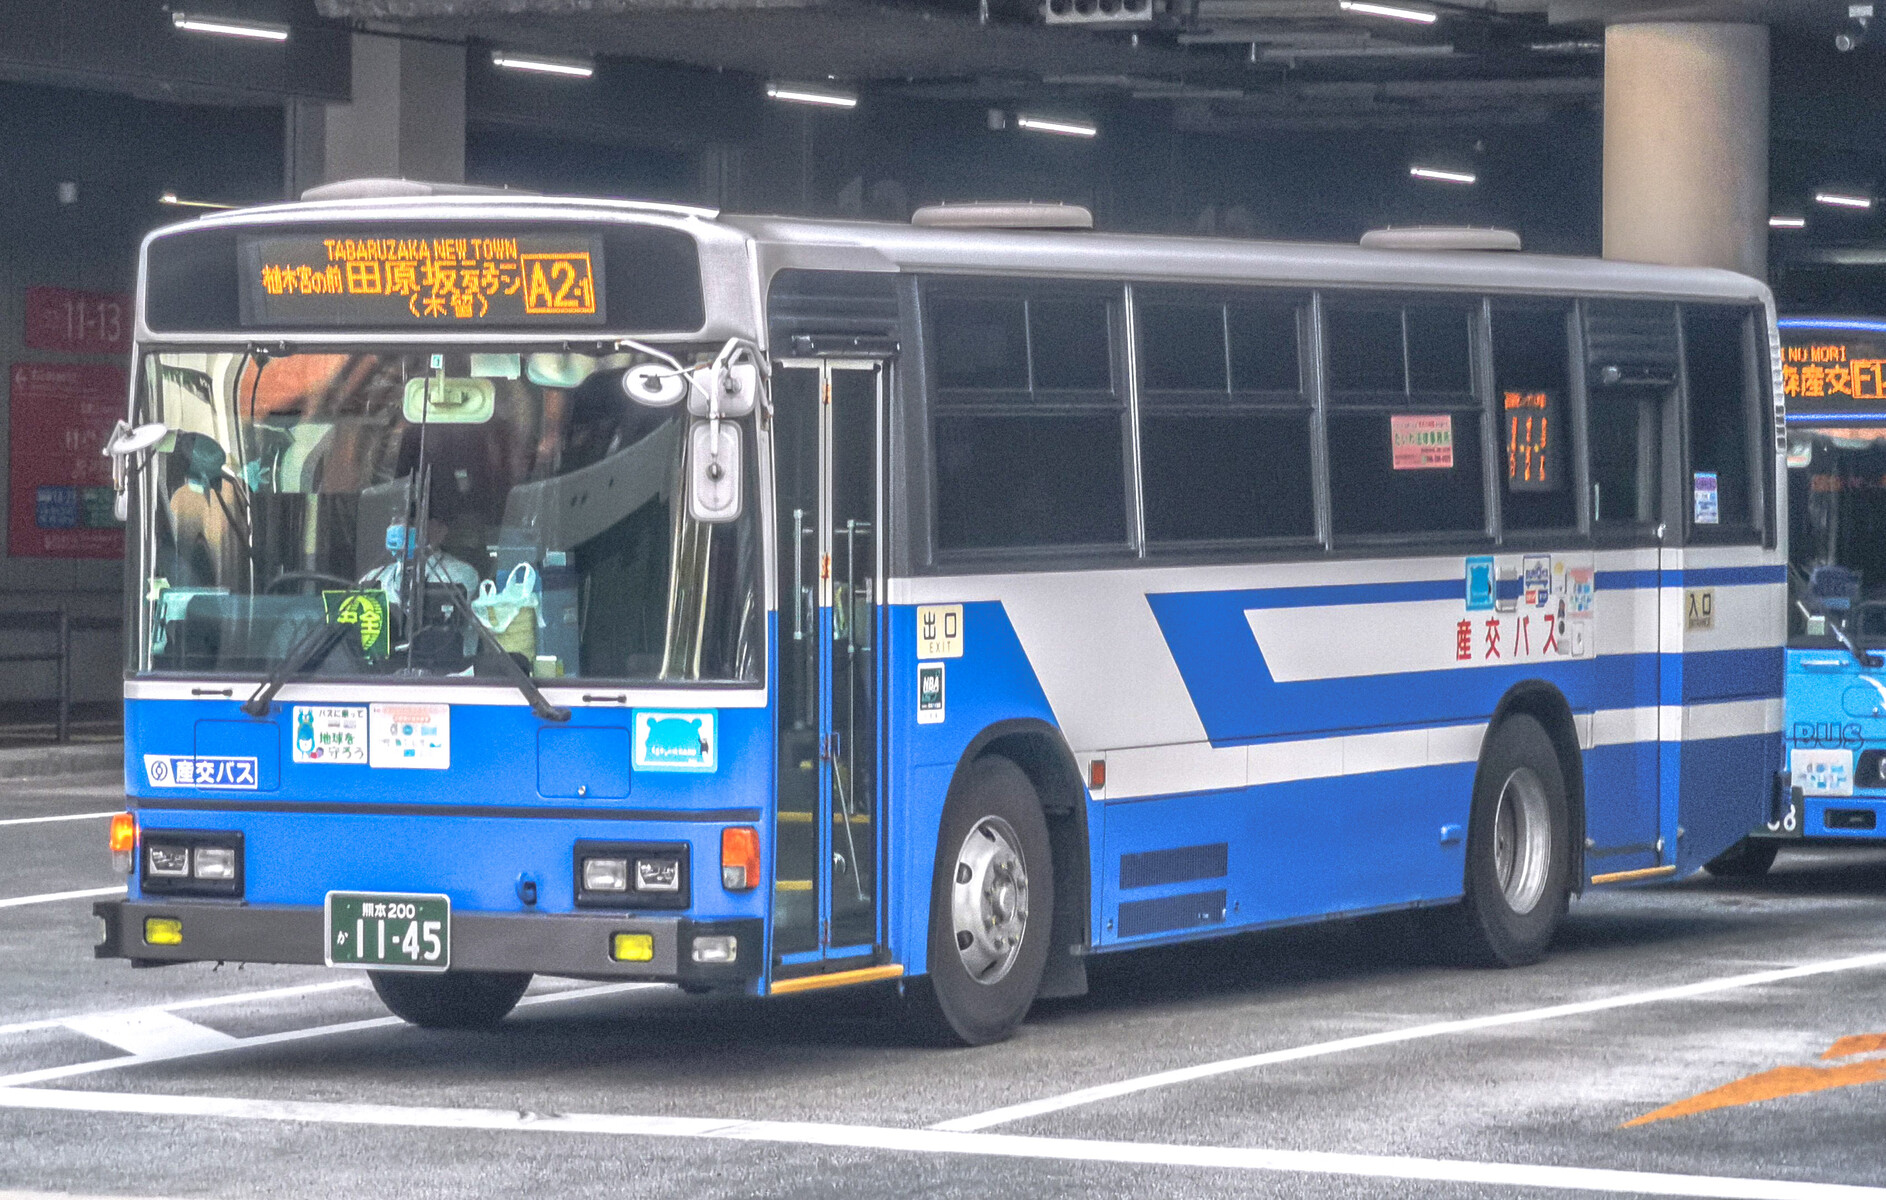 九州産交バス 熊本0か1145 ｂｕｓ画像館熊本 熊本の路線バス運行事業者５社 サービスの維持 拡充の為 21年4月1日 木 より共同経営型の事業形態へ移行予定 全国初の取り組みです